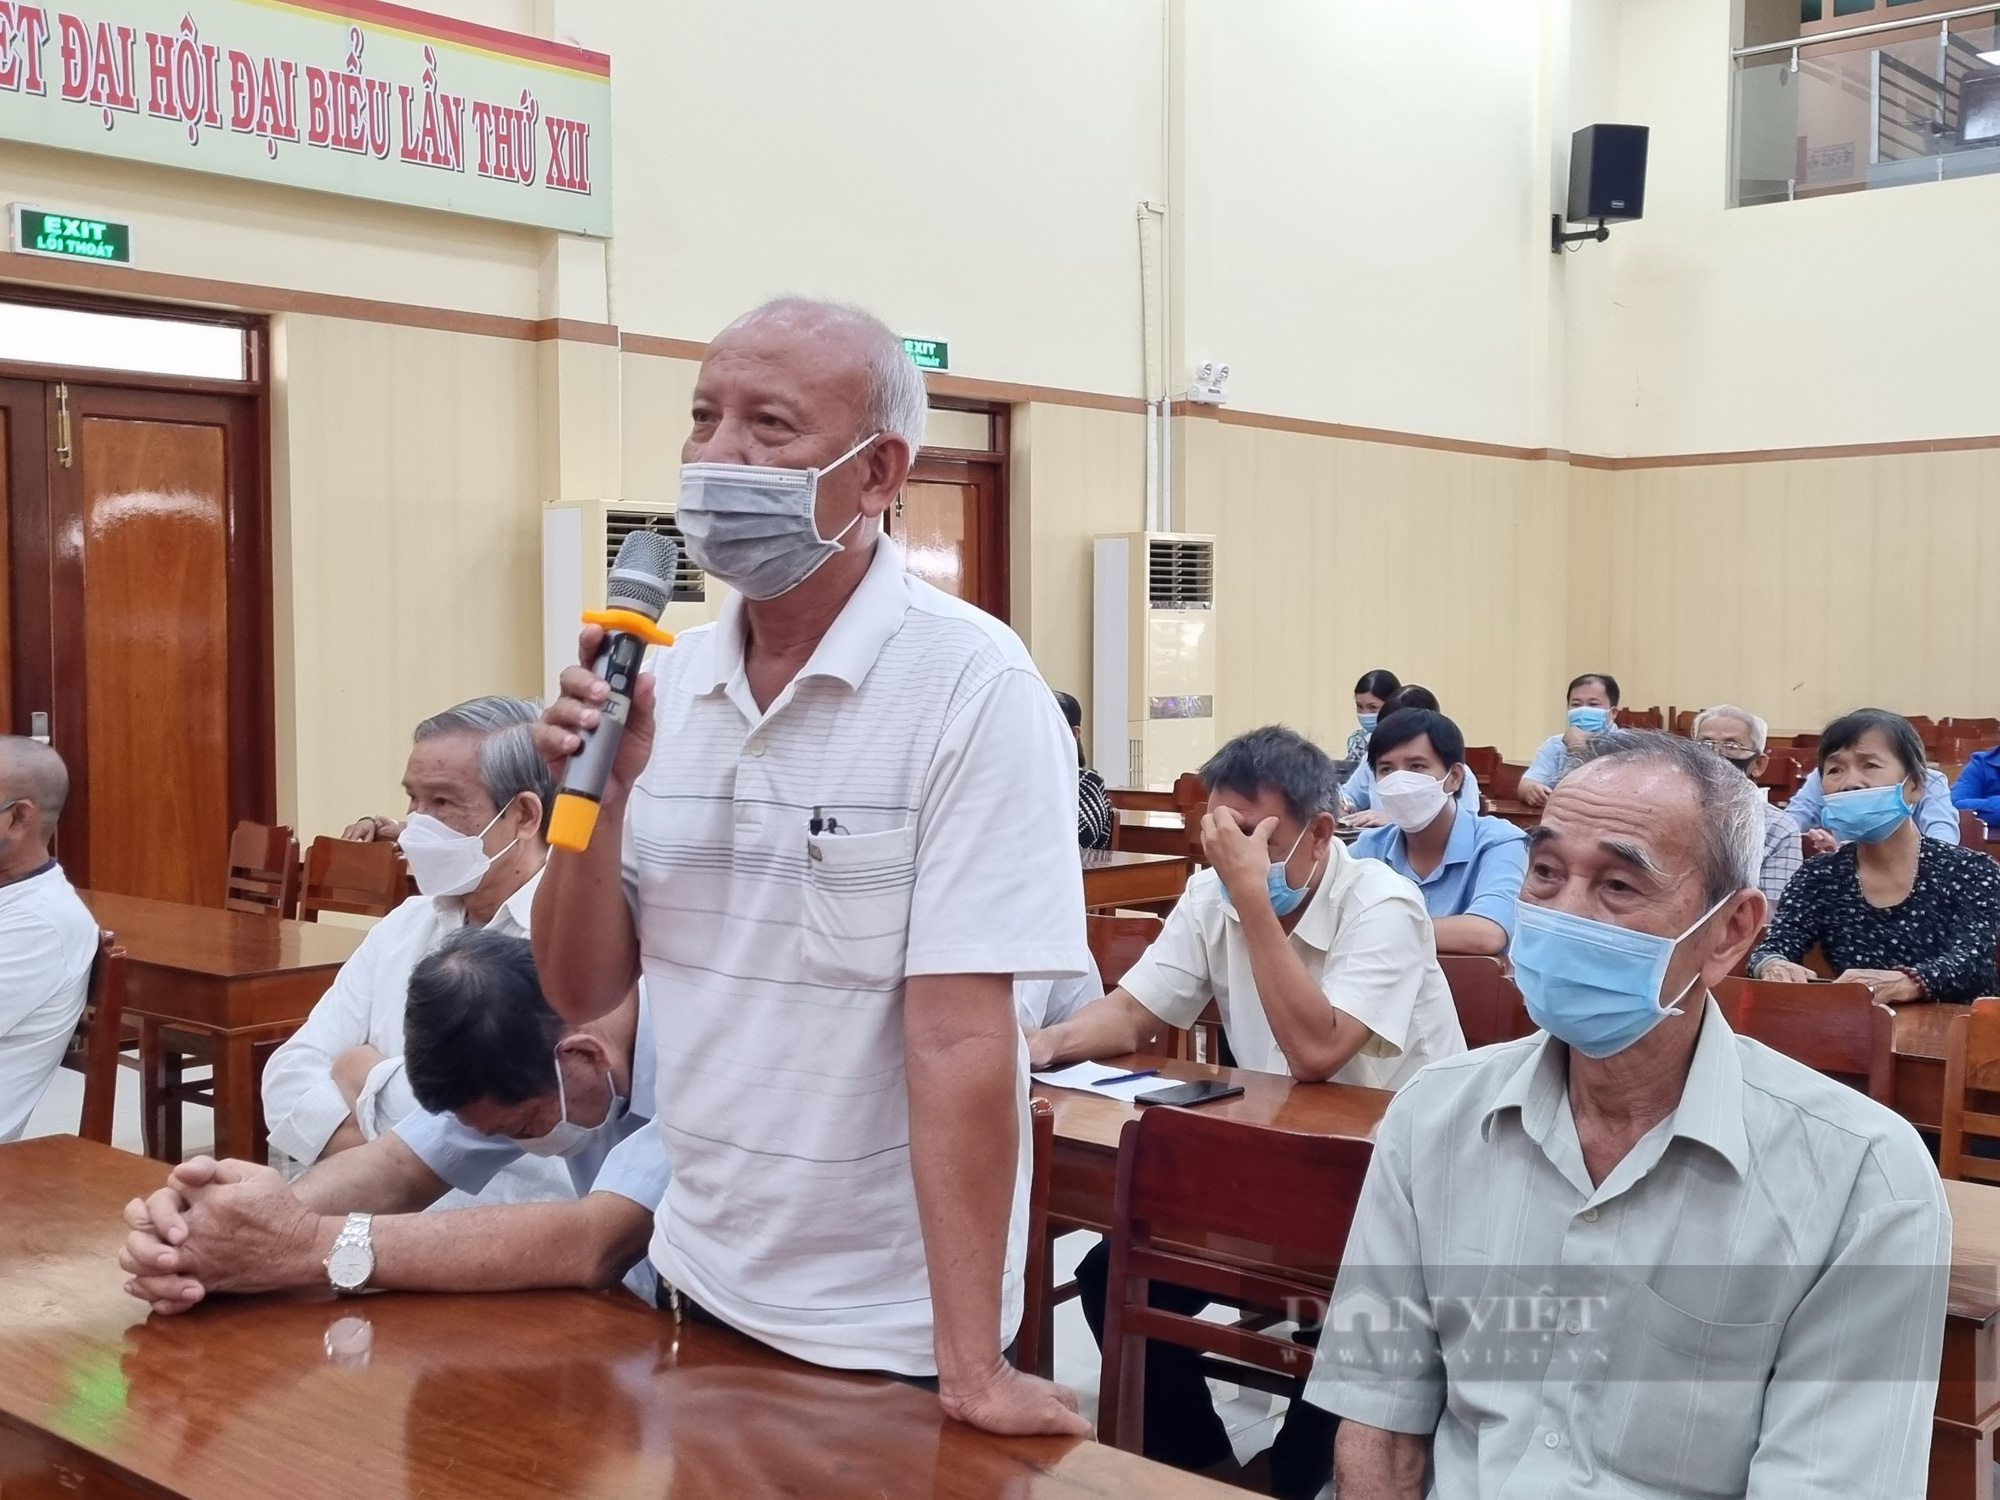 Đoàn đại biểu Quốc hội tỉnh An Giang: Sẽ kiến nghị ý kiến của cử tri lên Thủ tướng Chính phủ - Ảnh 3.